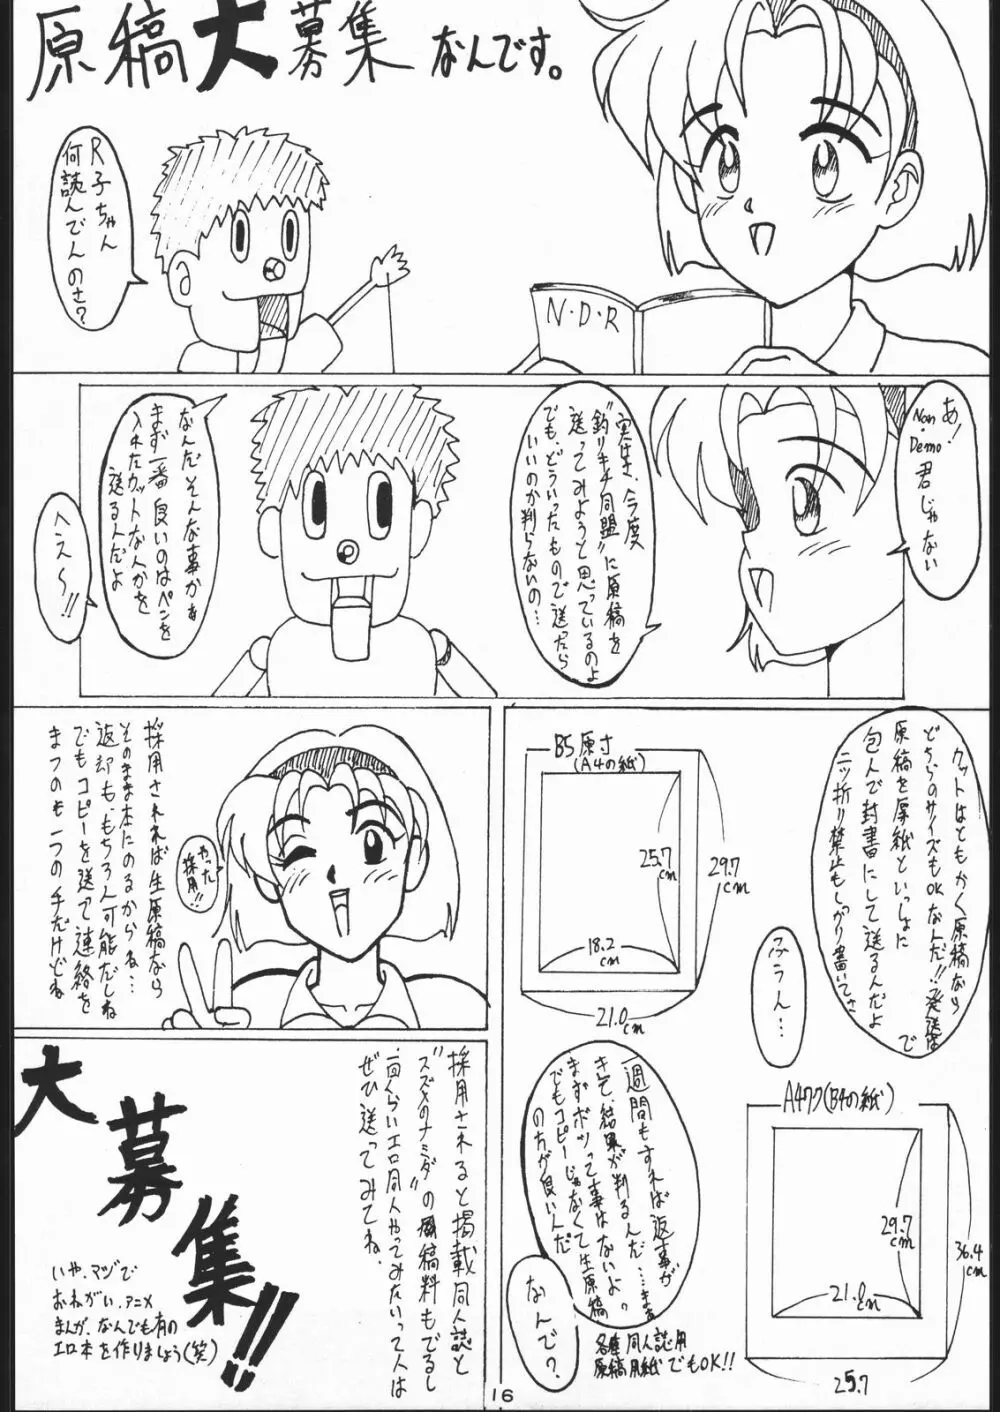 電撃隊Nan・Demo-9 15ページ